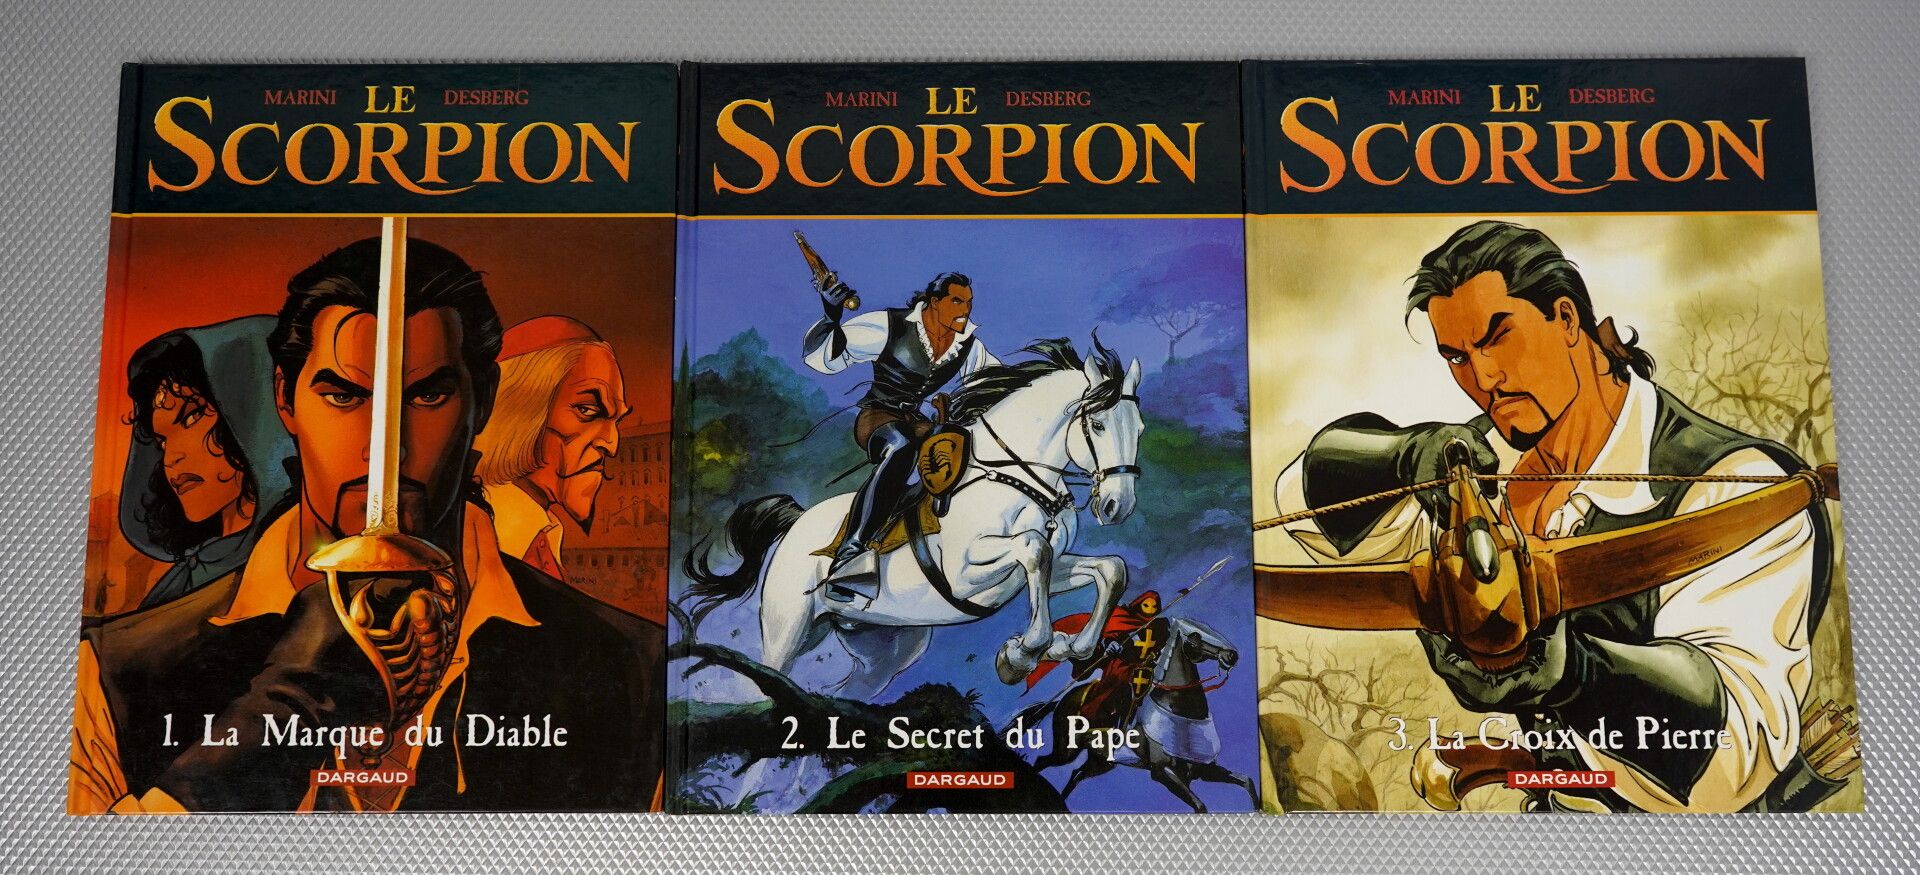 Null Der Skorpion (Marini und Desberg). 13 Alben.



Die 13 Bände der Saga, alle&hellip;